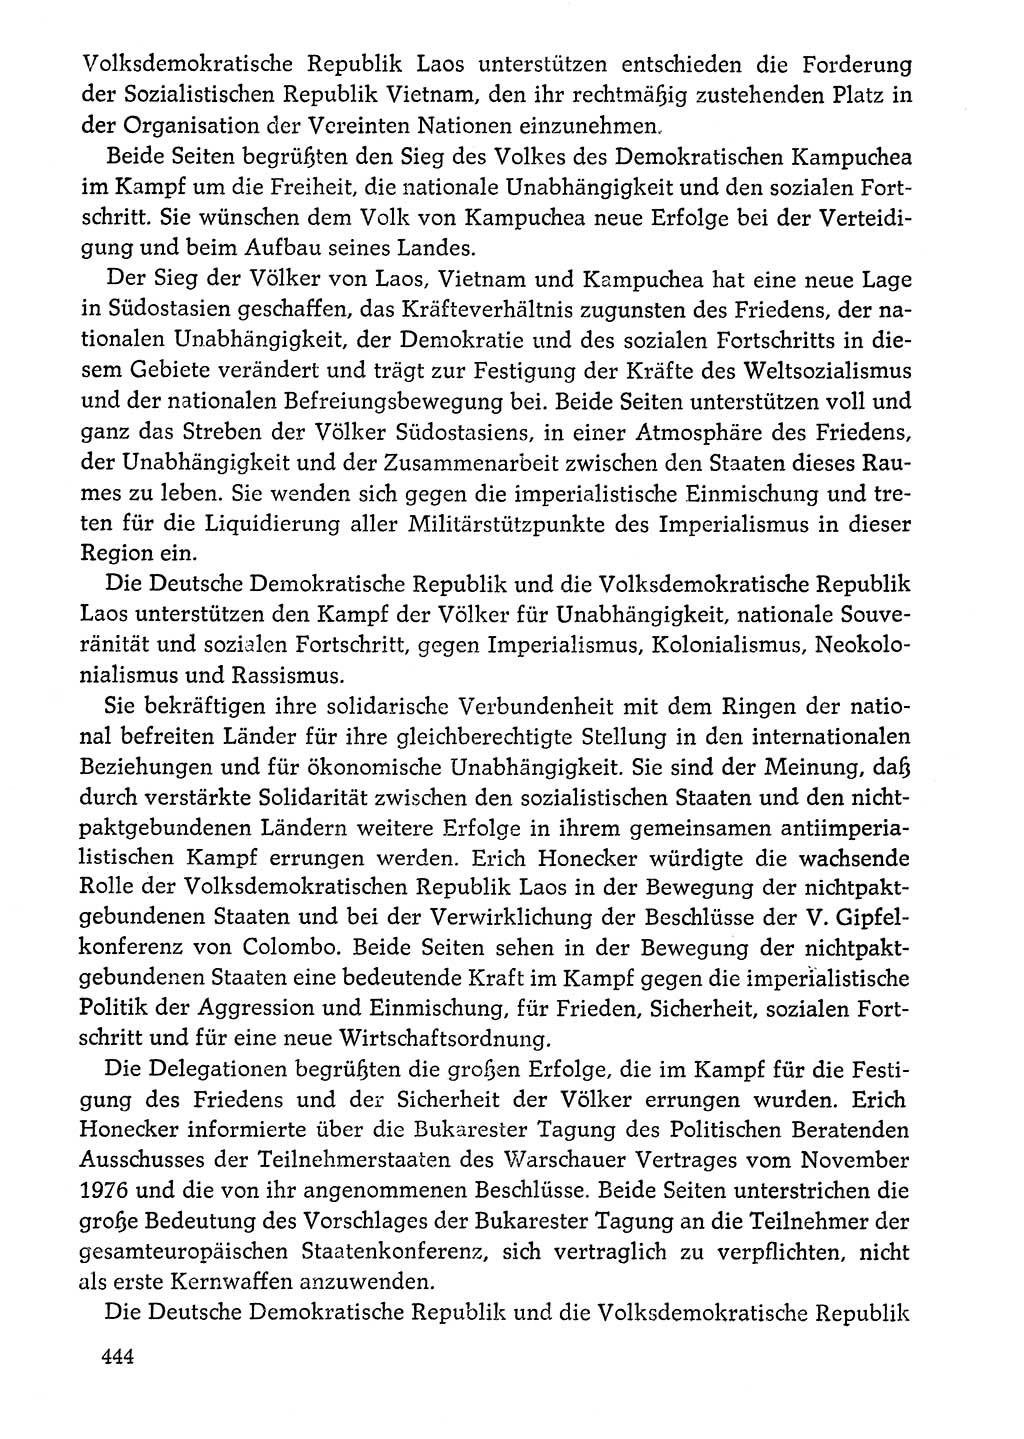 Dokumente der Sozialistischen Einheitspartei Deutschlands (SED) [Deutsche Demokratische Republik (DDR)] 1976-1977, Seite 444 (Dok. SED DDR 1976-1977, S. 444)